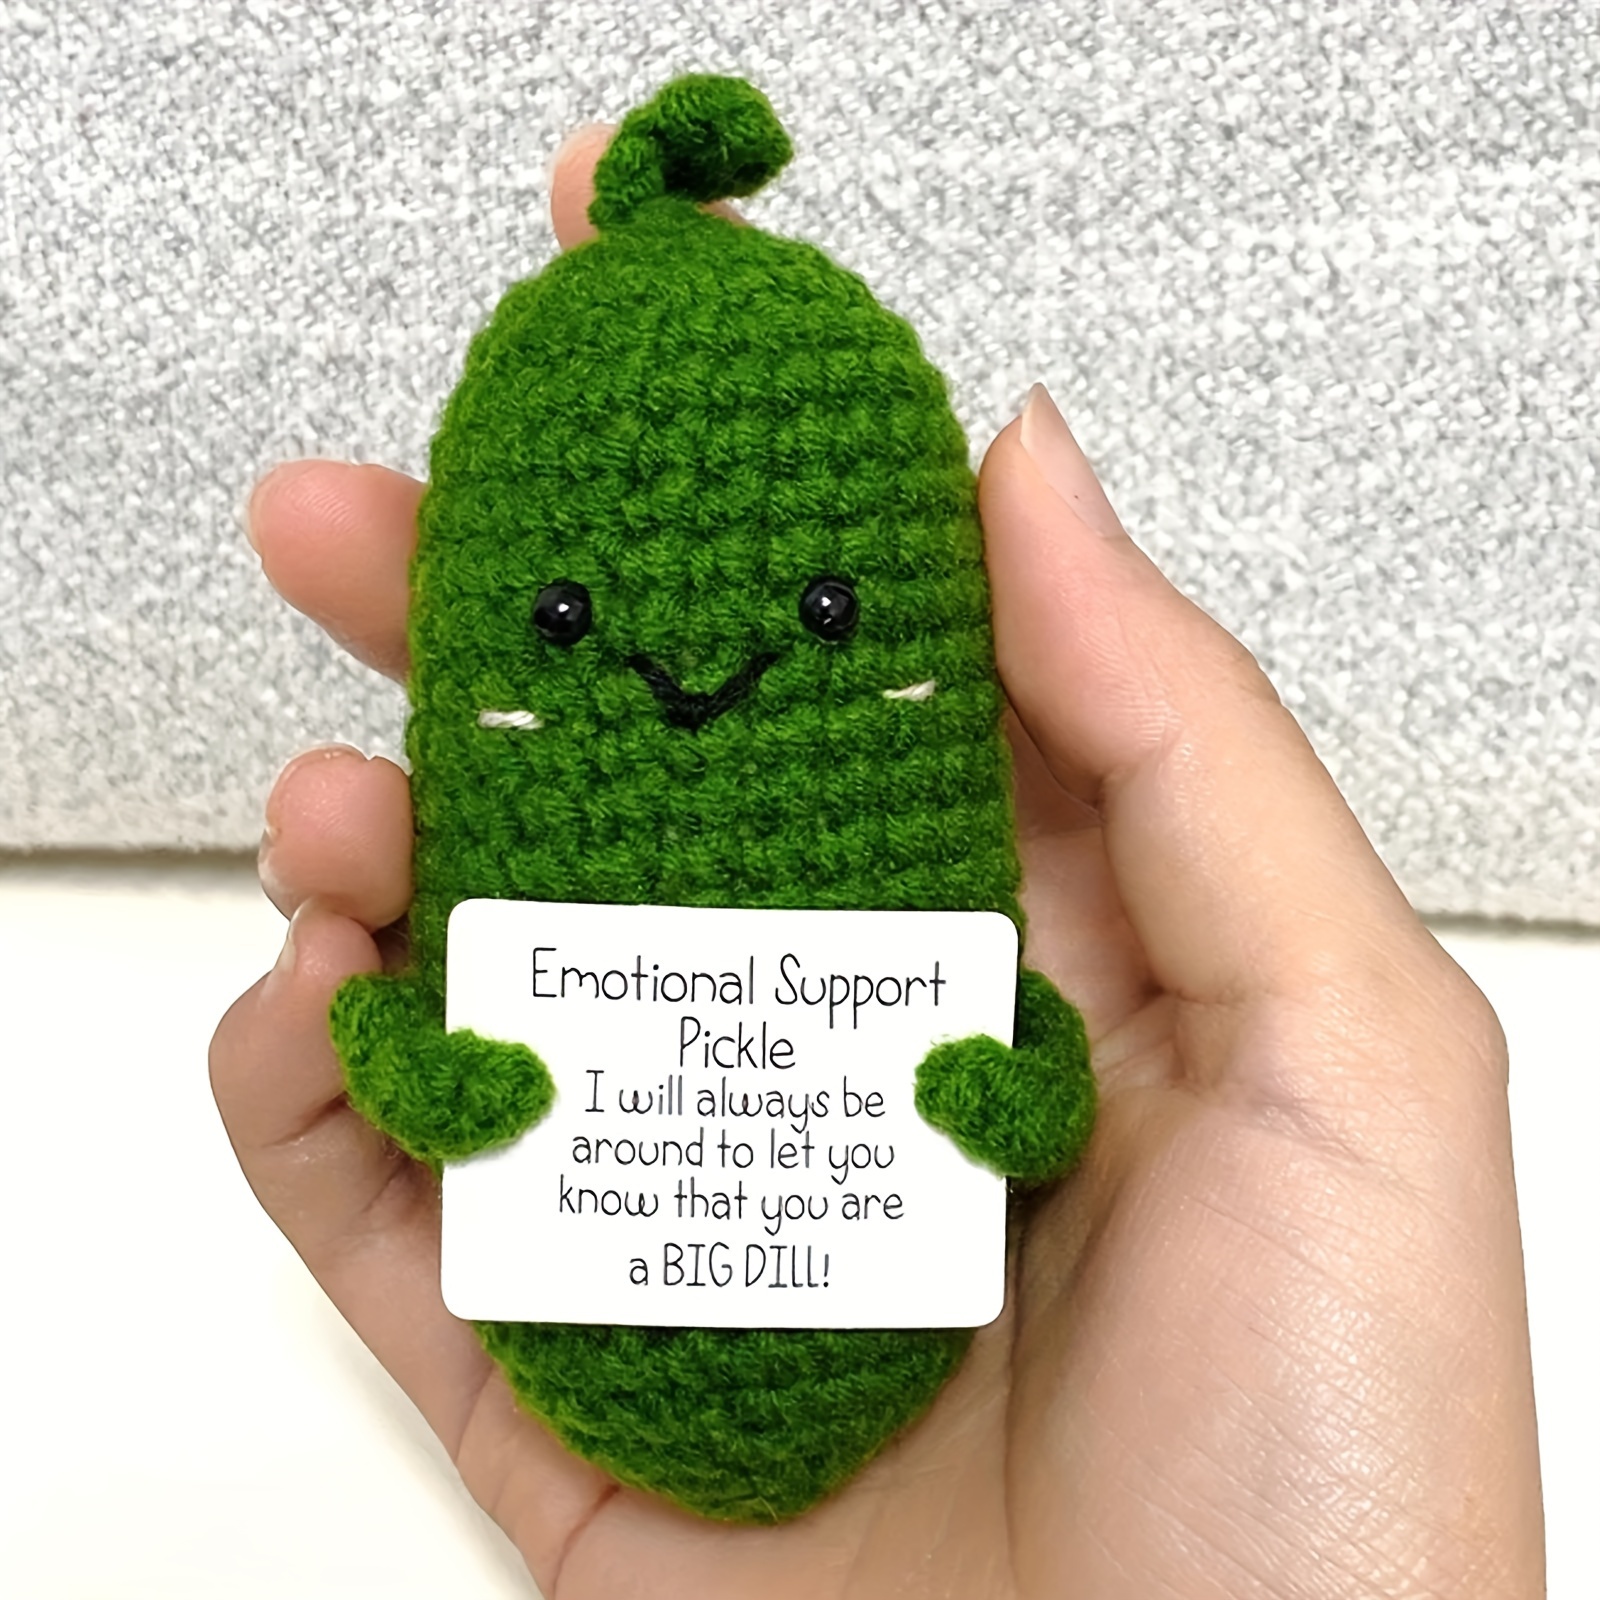 

1set Handmade Emotional Support Pickled Cucumber Gift, Handmade Crochet Emotional Support Pickles, Cute Crochet Pickled Cucumber Knitting Doll, Christmas Pickle Ornament Gift